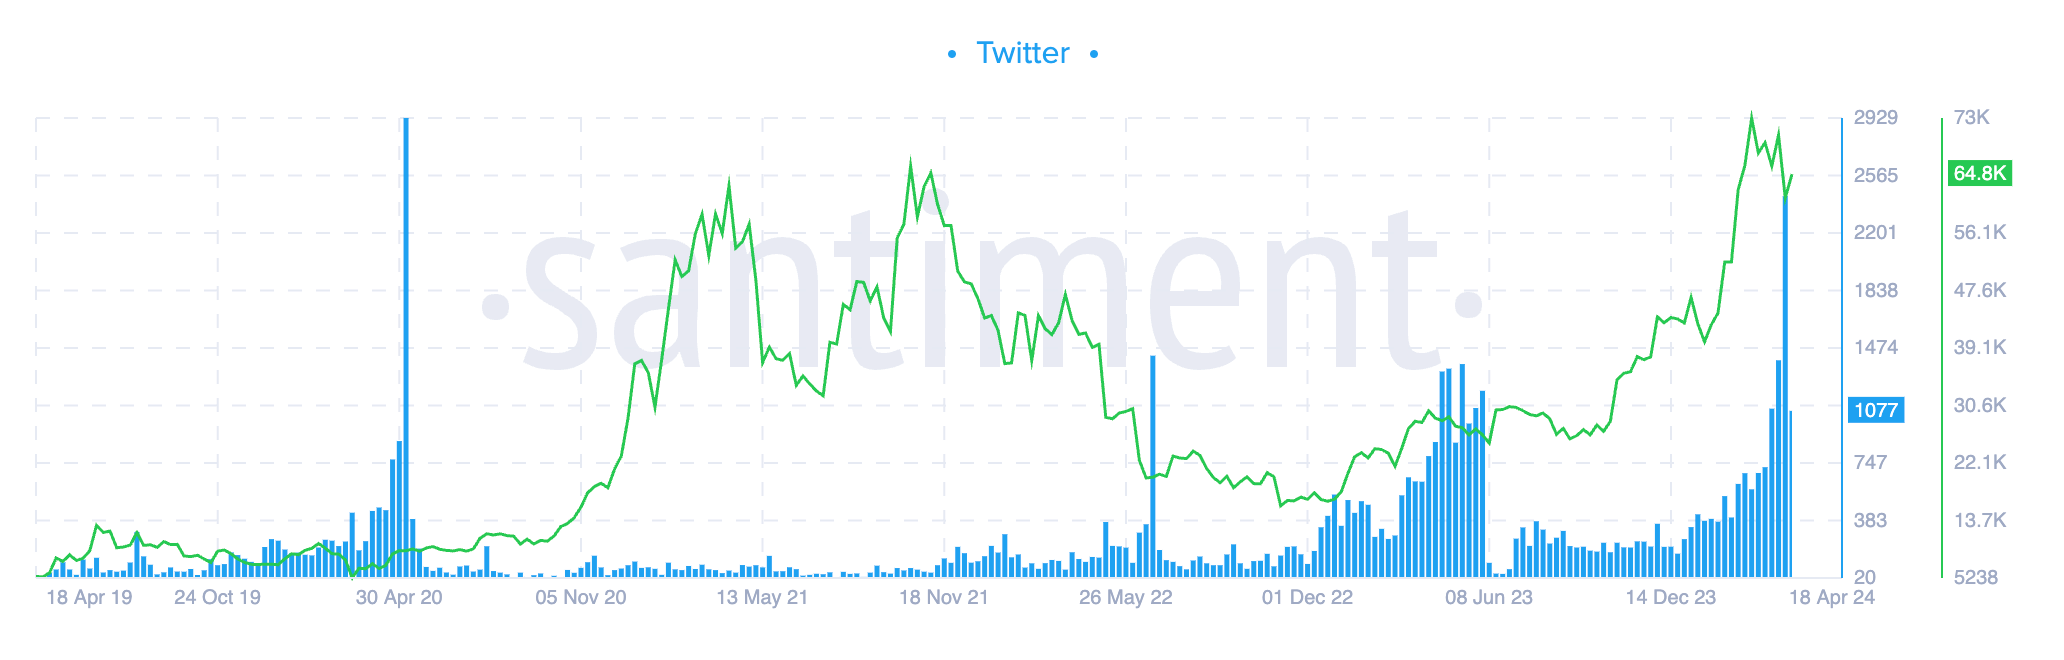 A Bitcoin felére csökkentette a Twitter érdeklődését (Santiment)